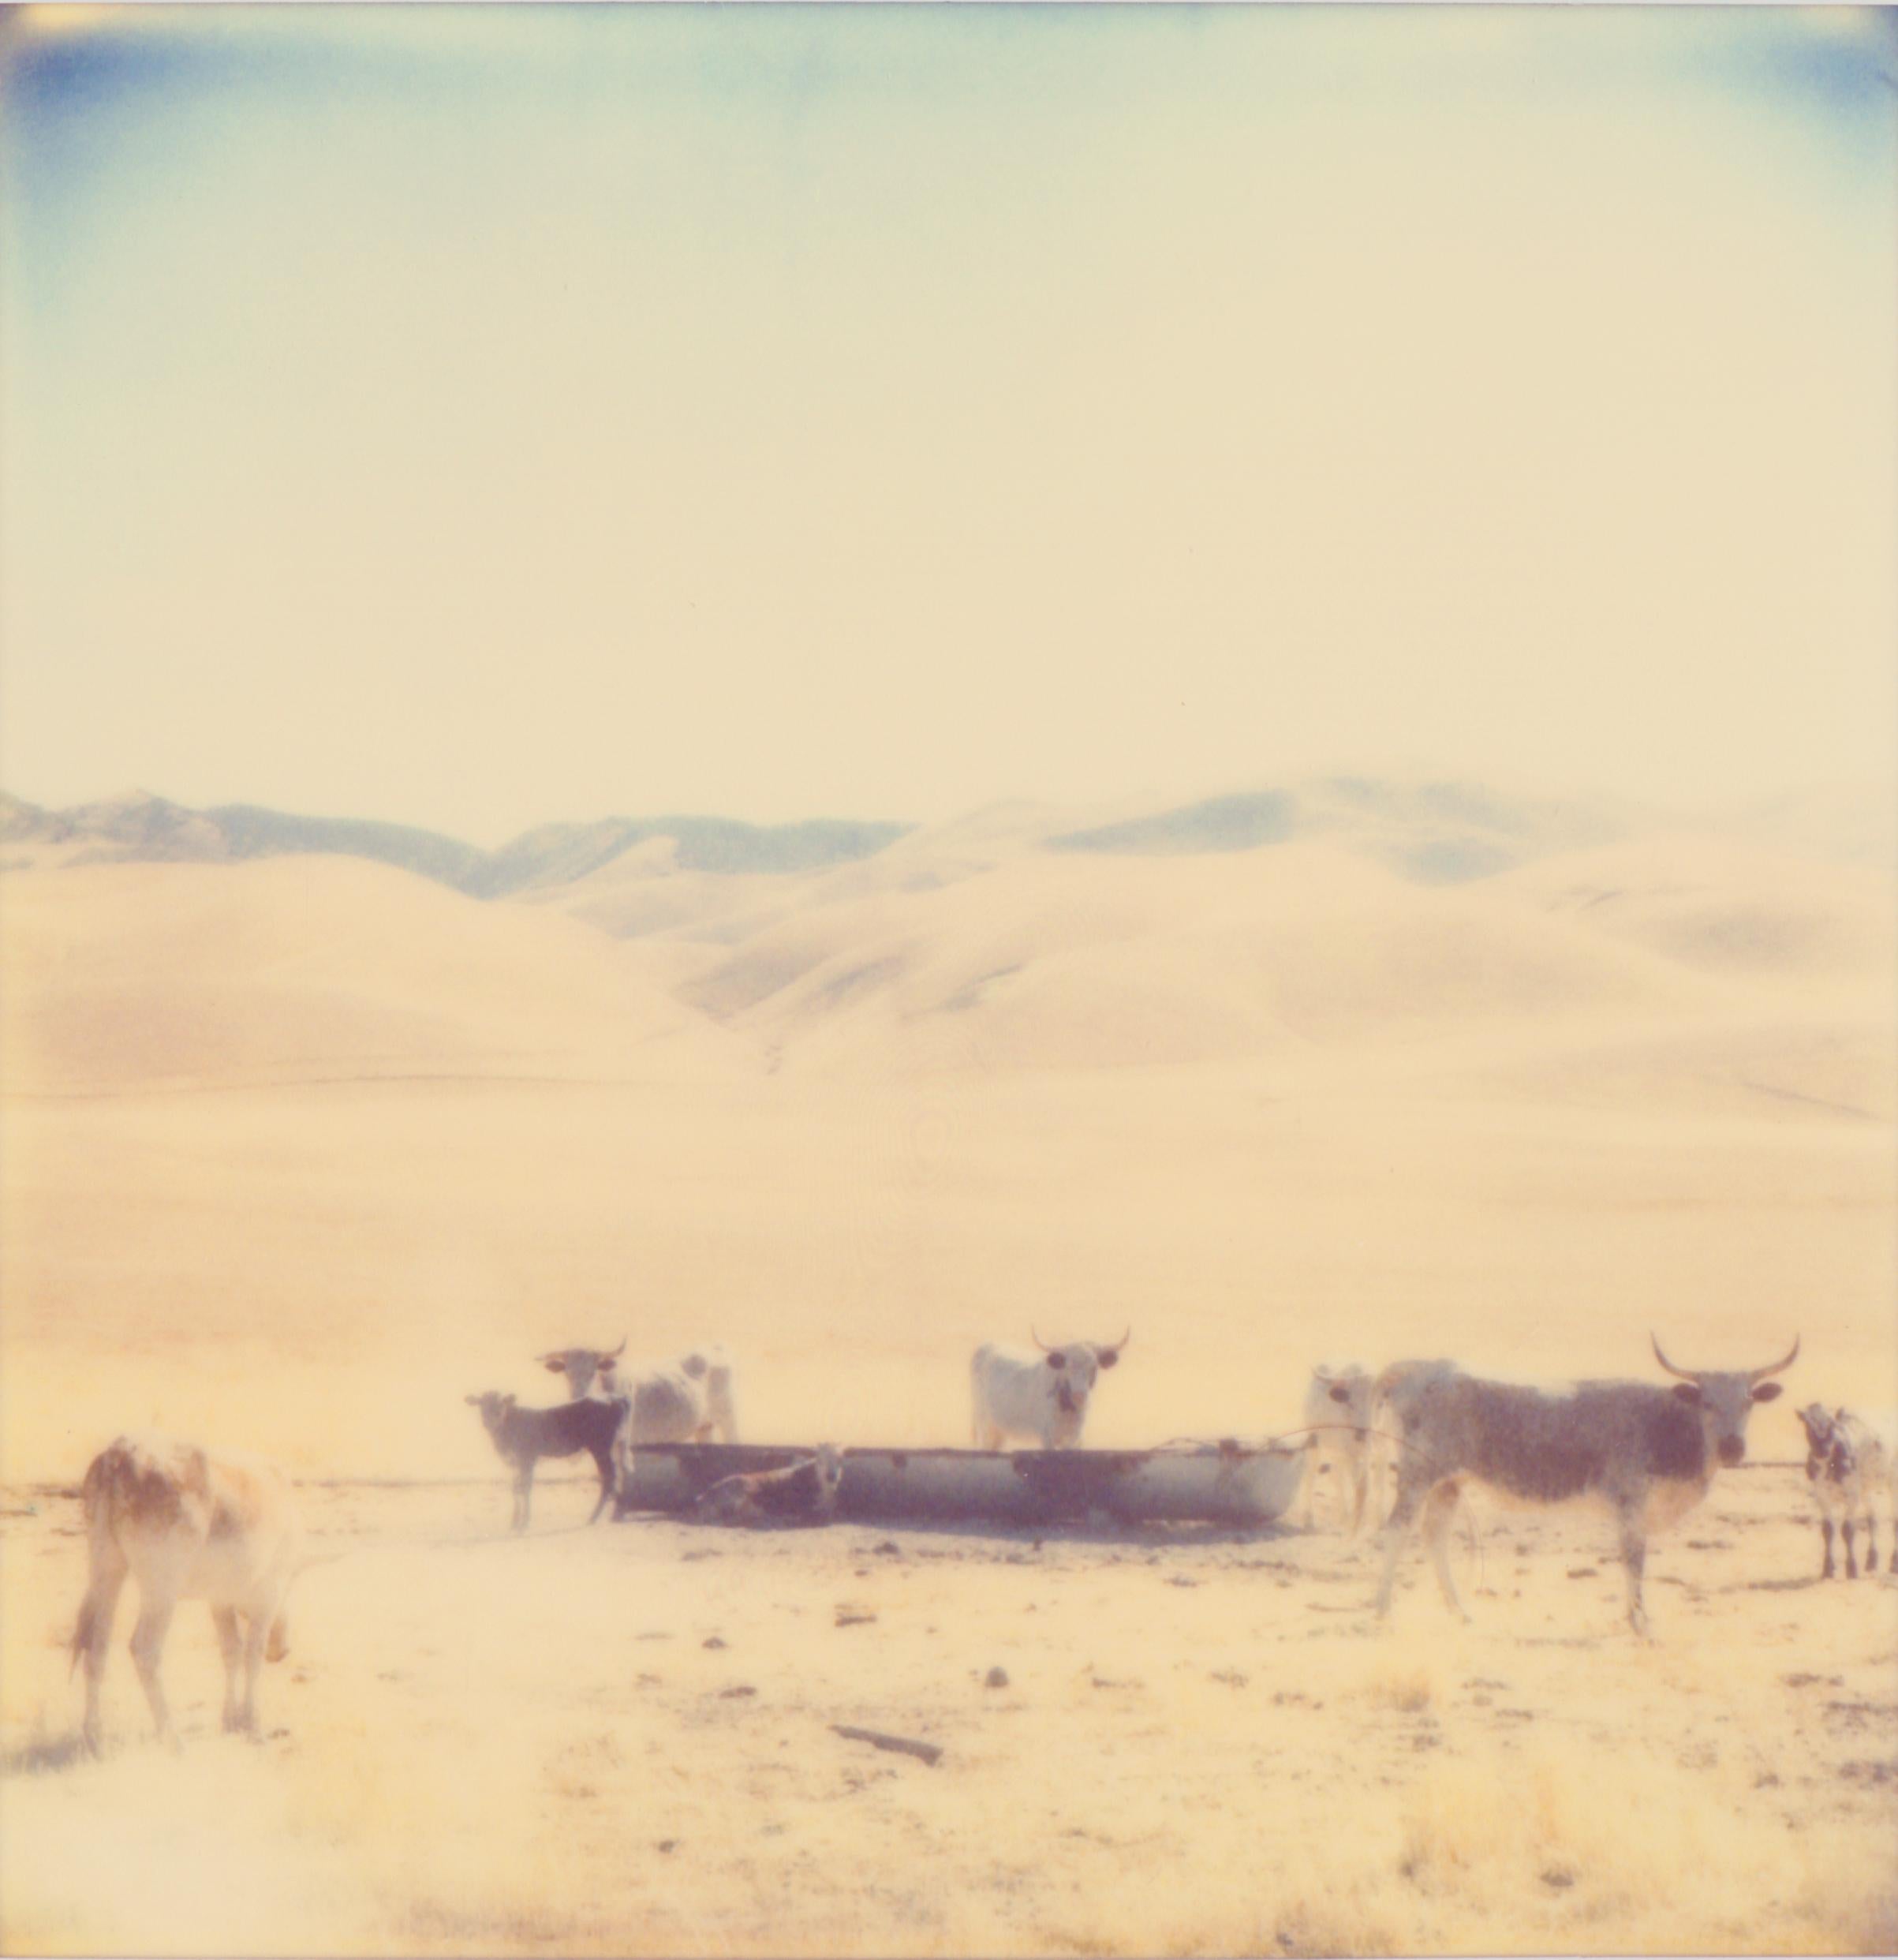 Ölfields, Diptychon - 21. Jahrhundert, Polaroid, Zeitgenössisch, Porträt, Landschaft – Photograph von Stefanie Schneider